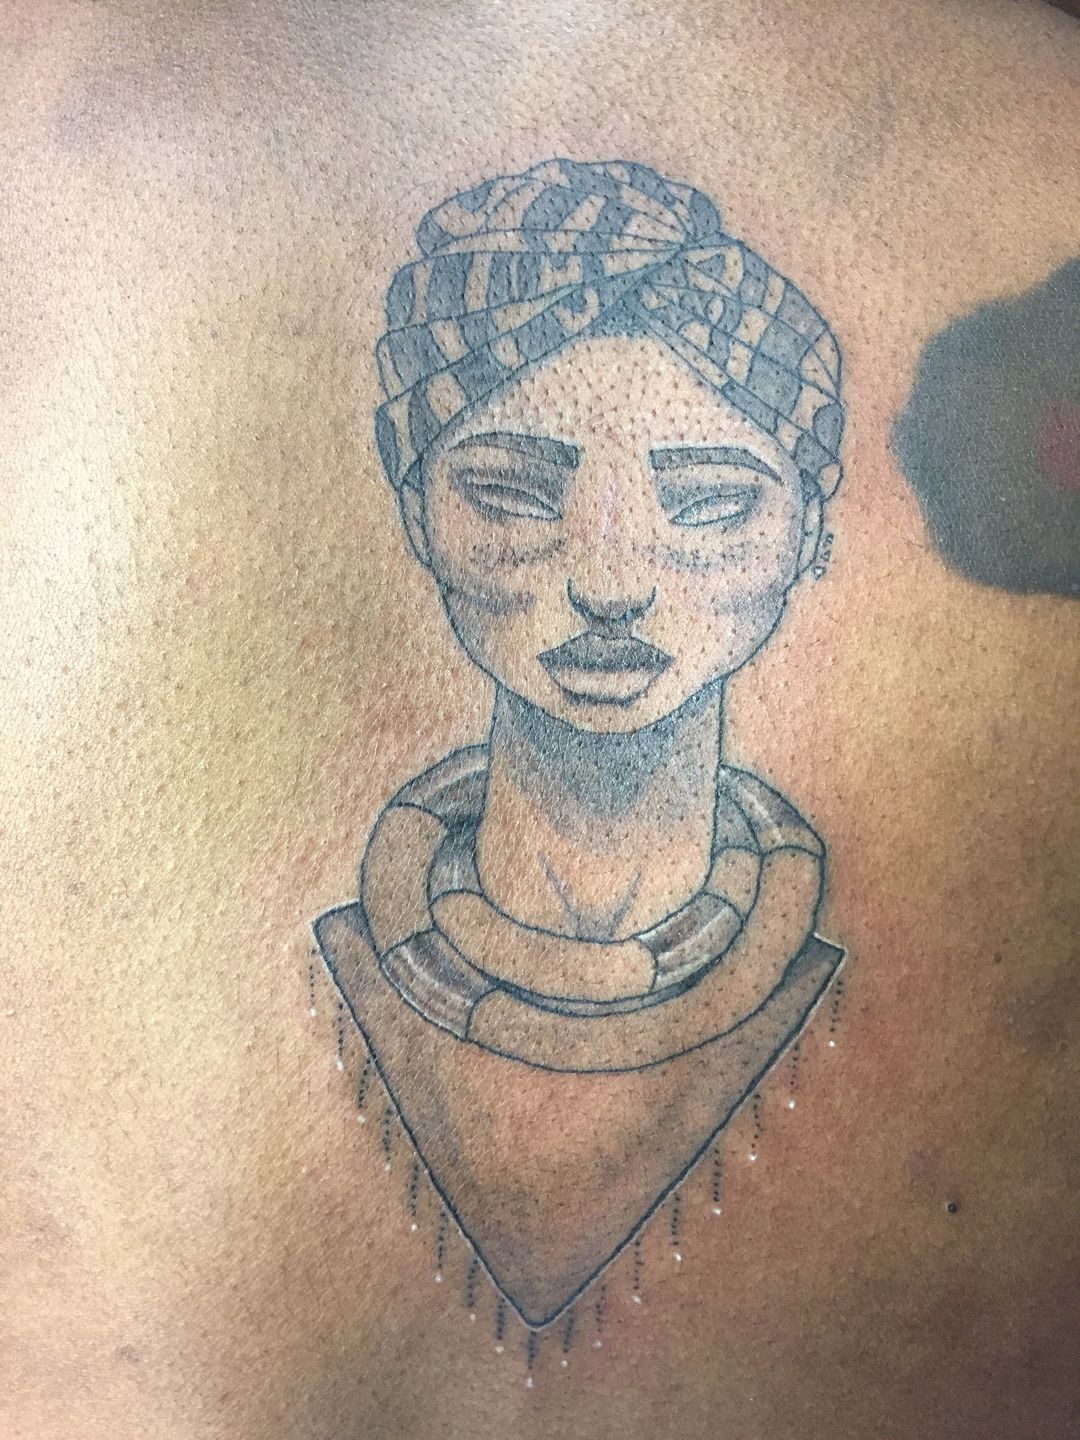 Nefertiti - Tattoos by KisaSwan on DeviantArt